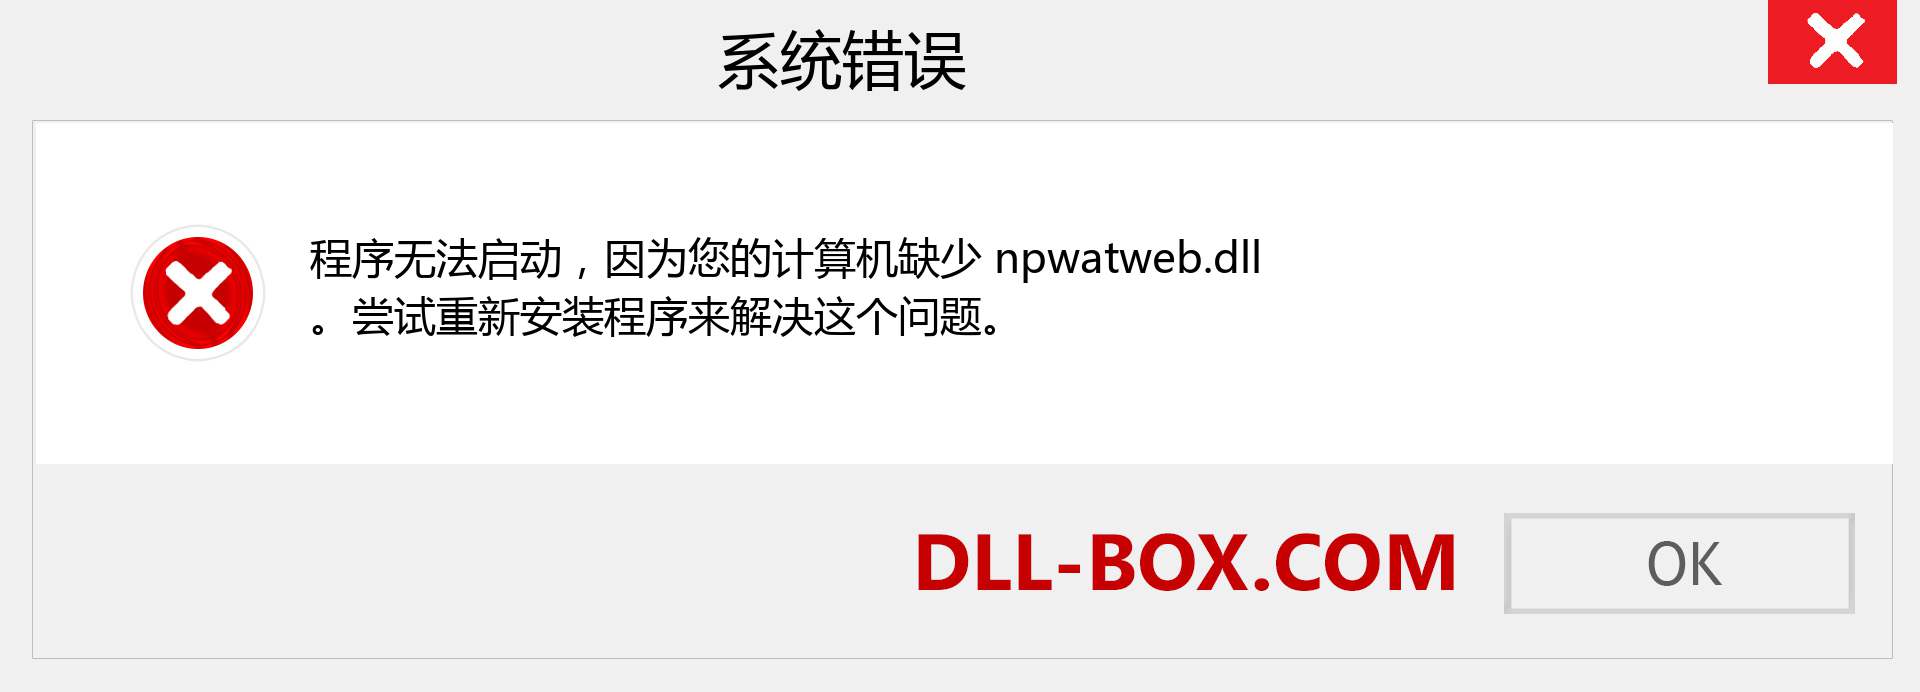 npwatweb.dll 文件丢失？。 适用于 Windows 7、8、10 的下载 - 修复 Windows、照片、图像上的 npwatweb dll 丢失错误